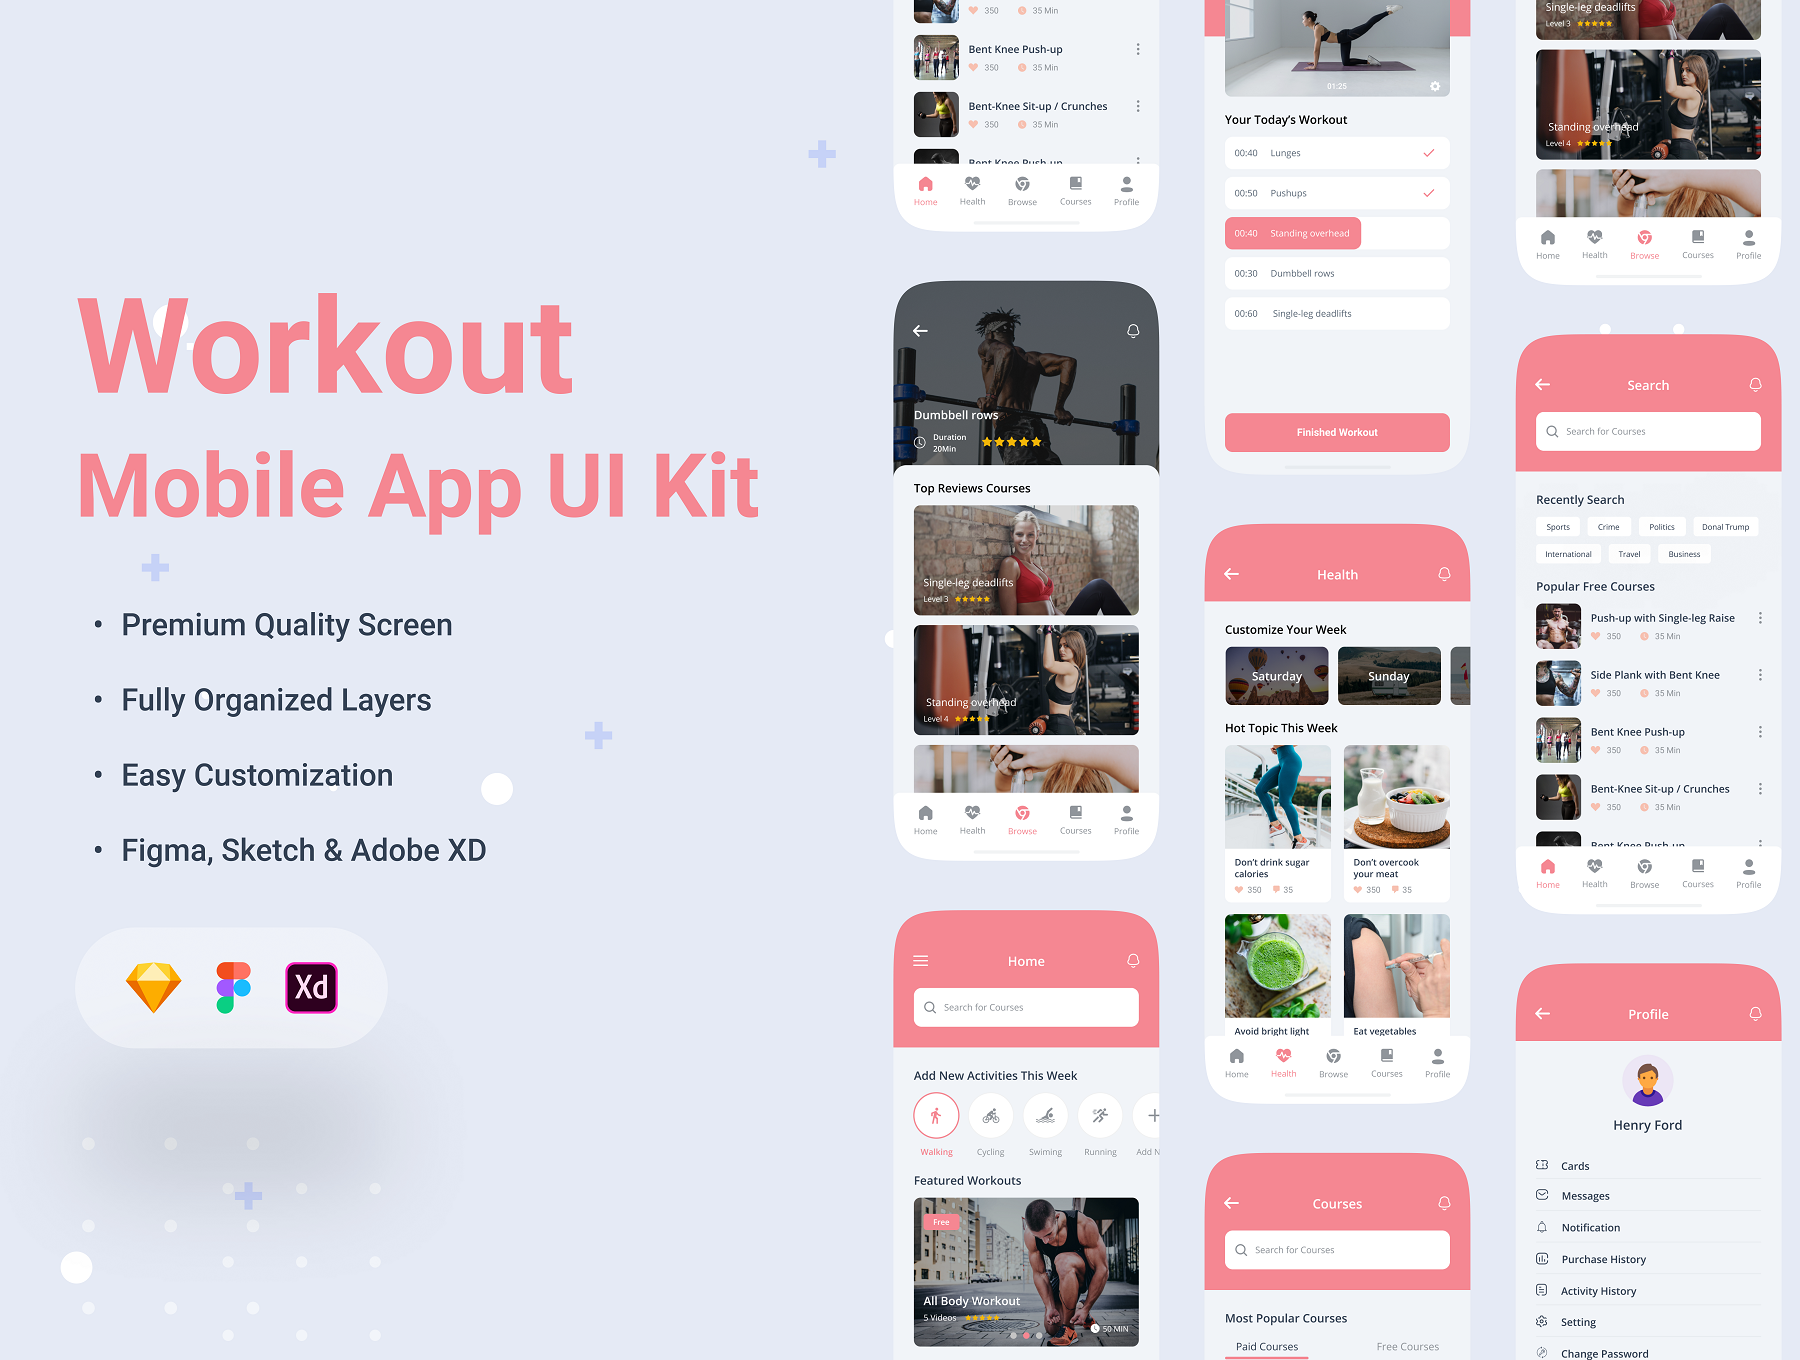 34 健身教学在线视频直播课程iOS用户手机ui设计sketch模板 Fitness & Workout App UI Kit 34